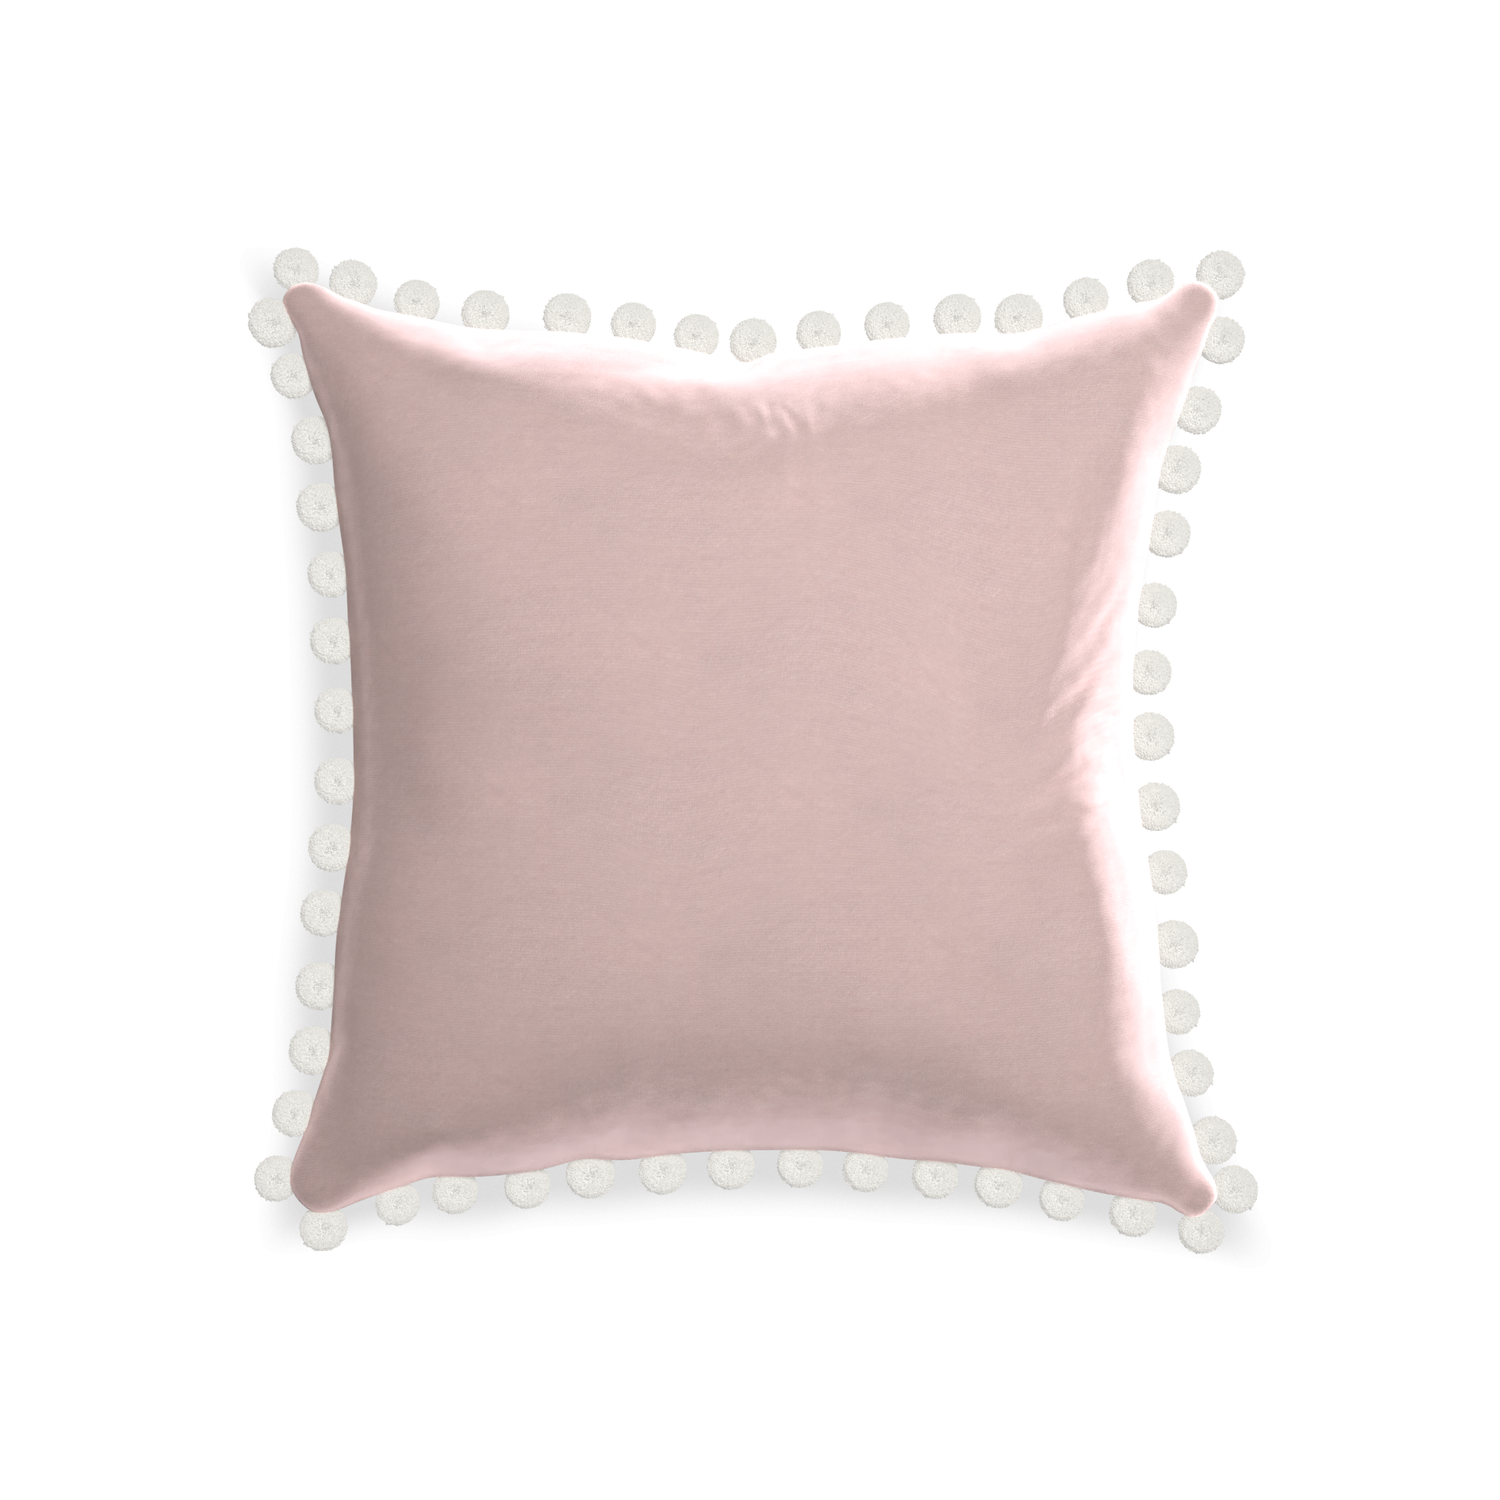 20-square rose velvet custom pillow with snow pom pom on white background